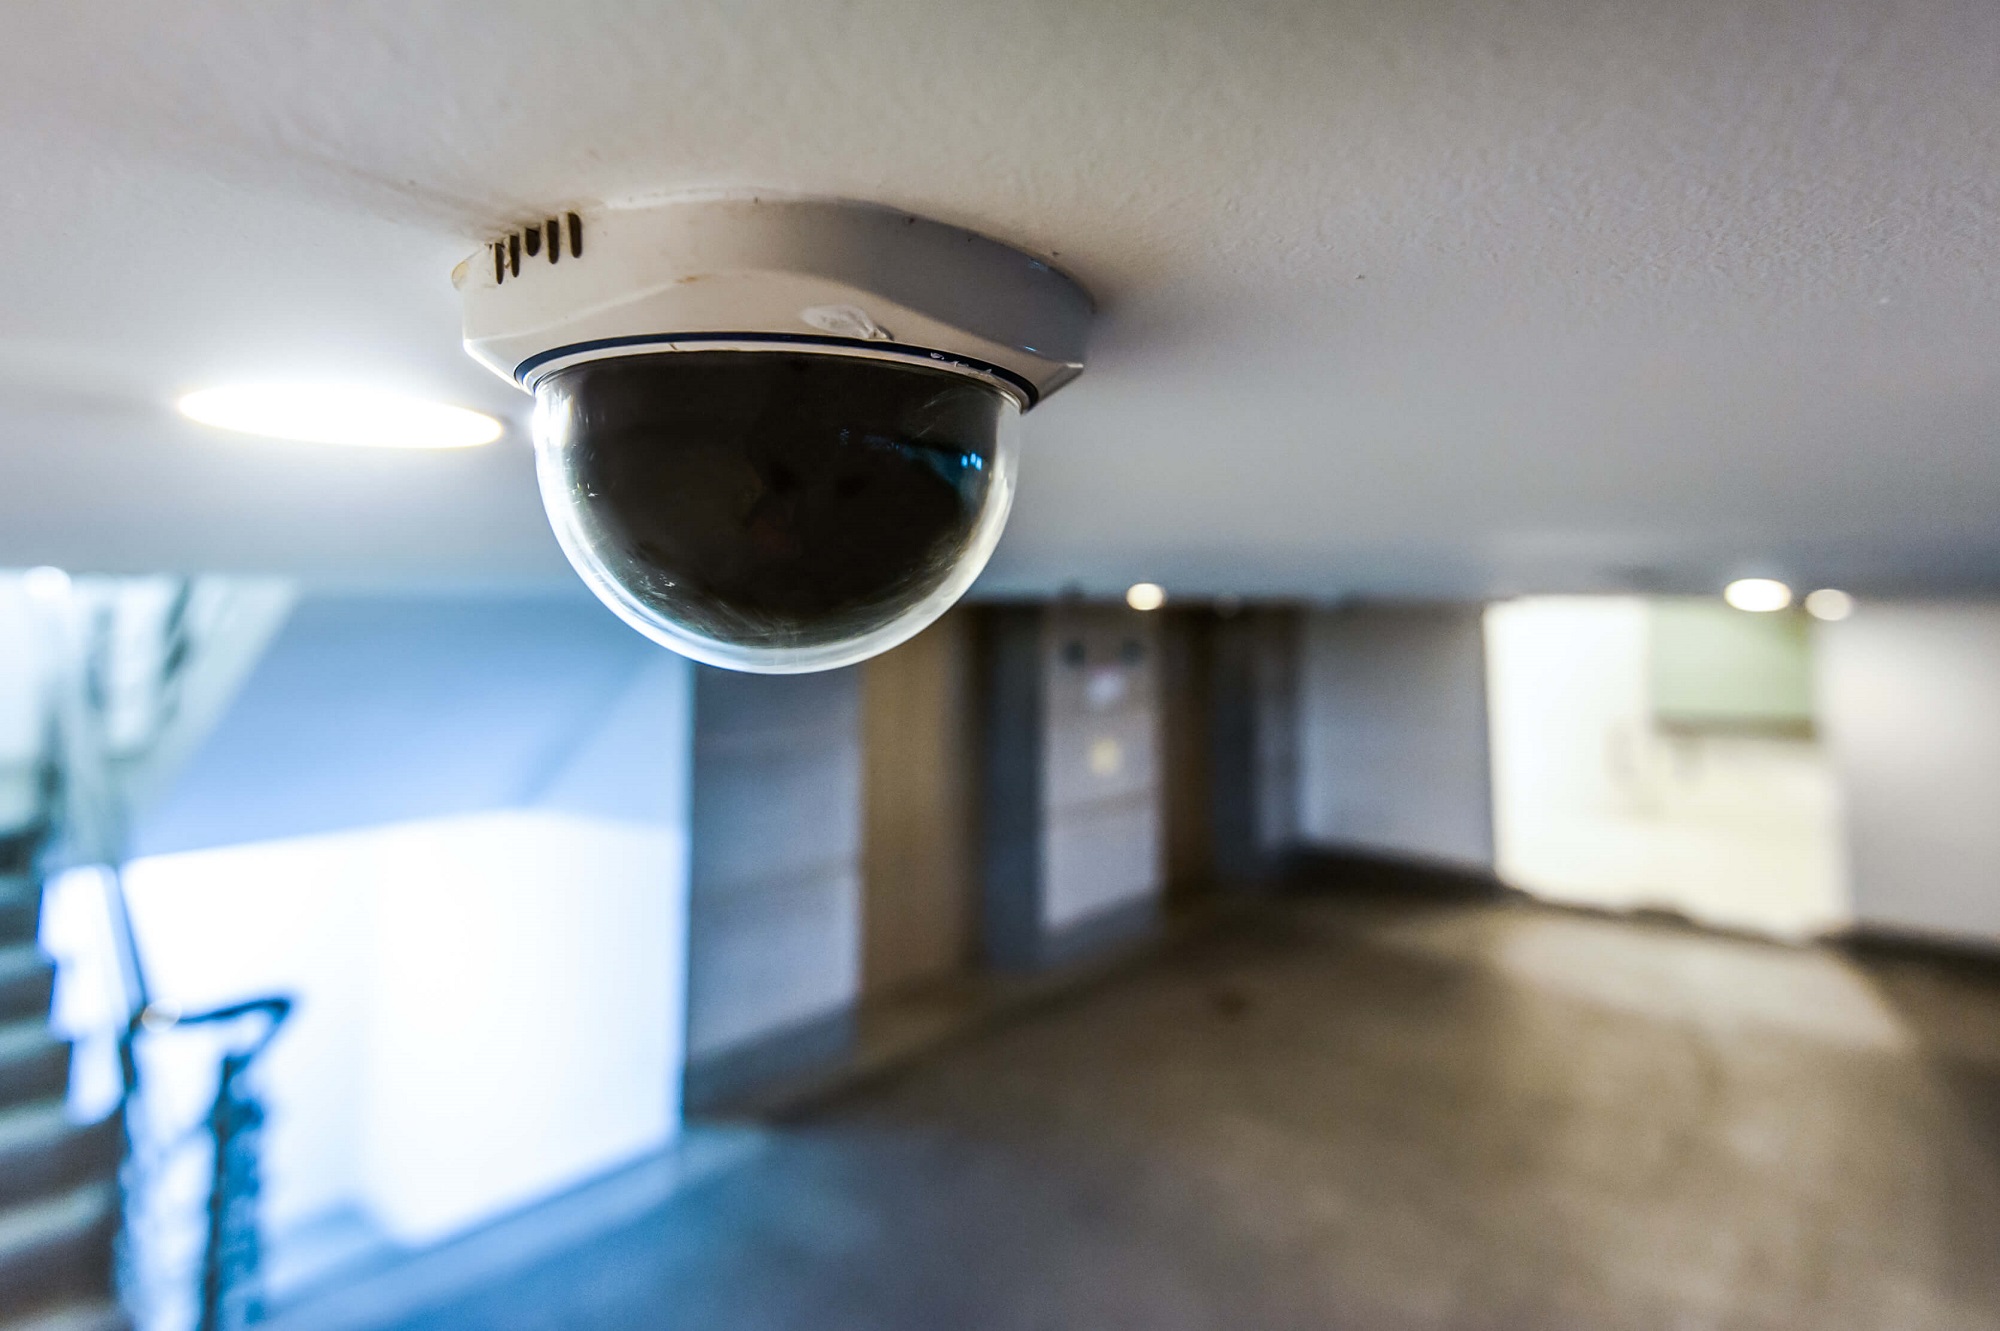 Jaki system kamer CCTV kupić